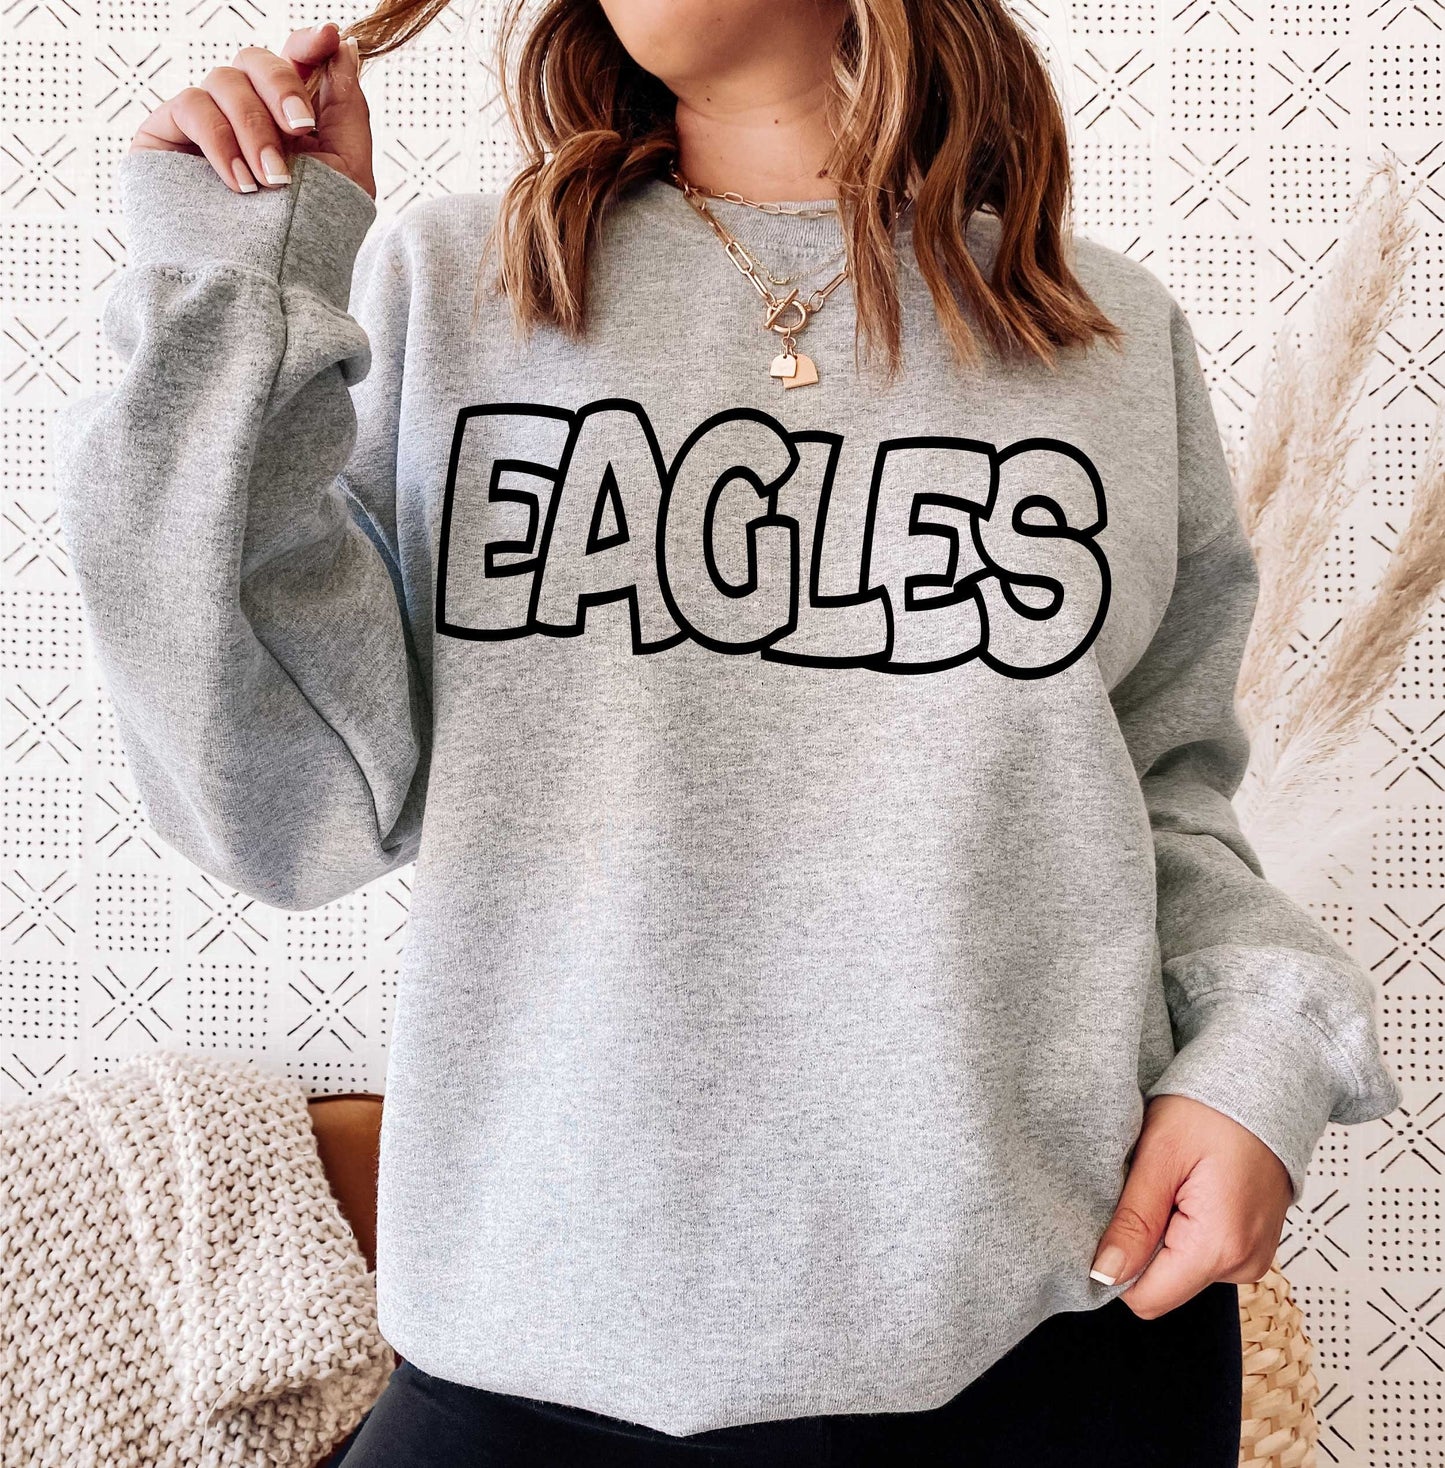 Eagles svg, Eagles Outline svg, Eagles shirt svg, Digital Design, Eagles Mascot